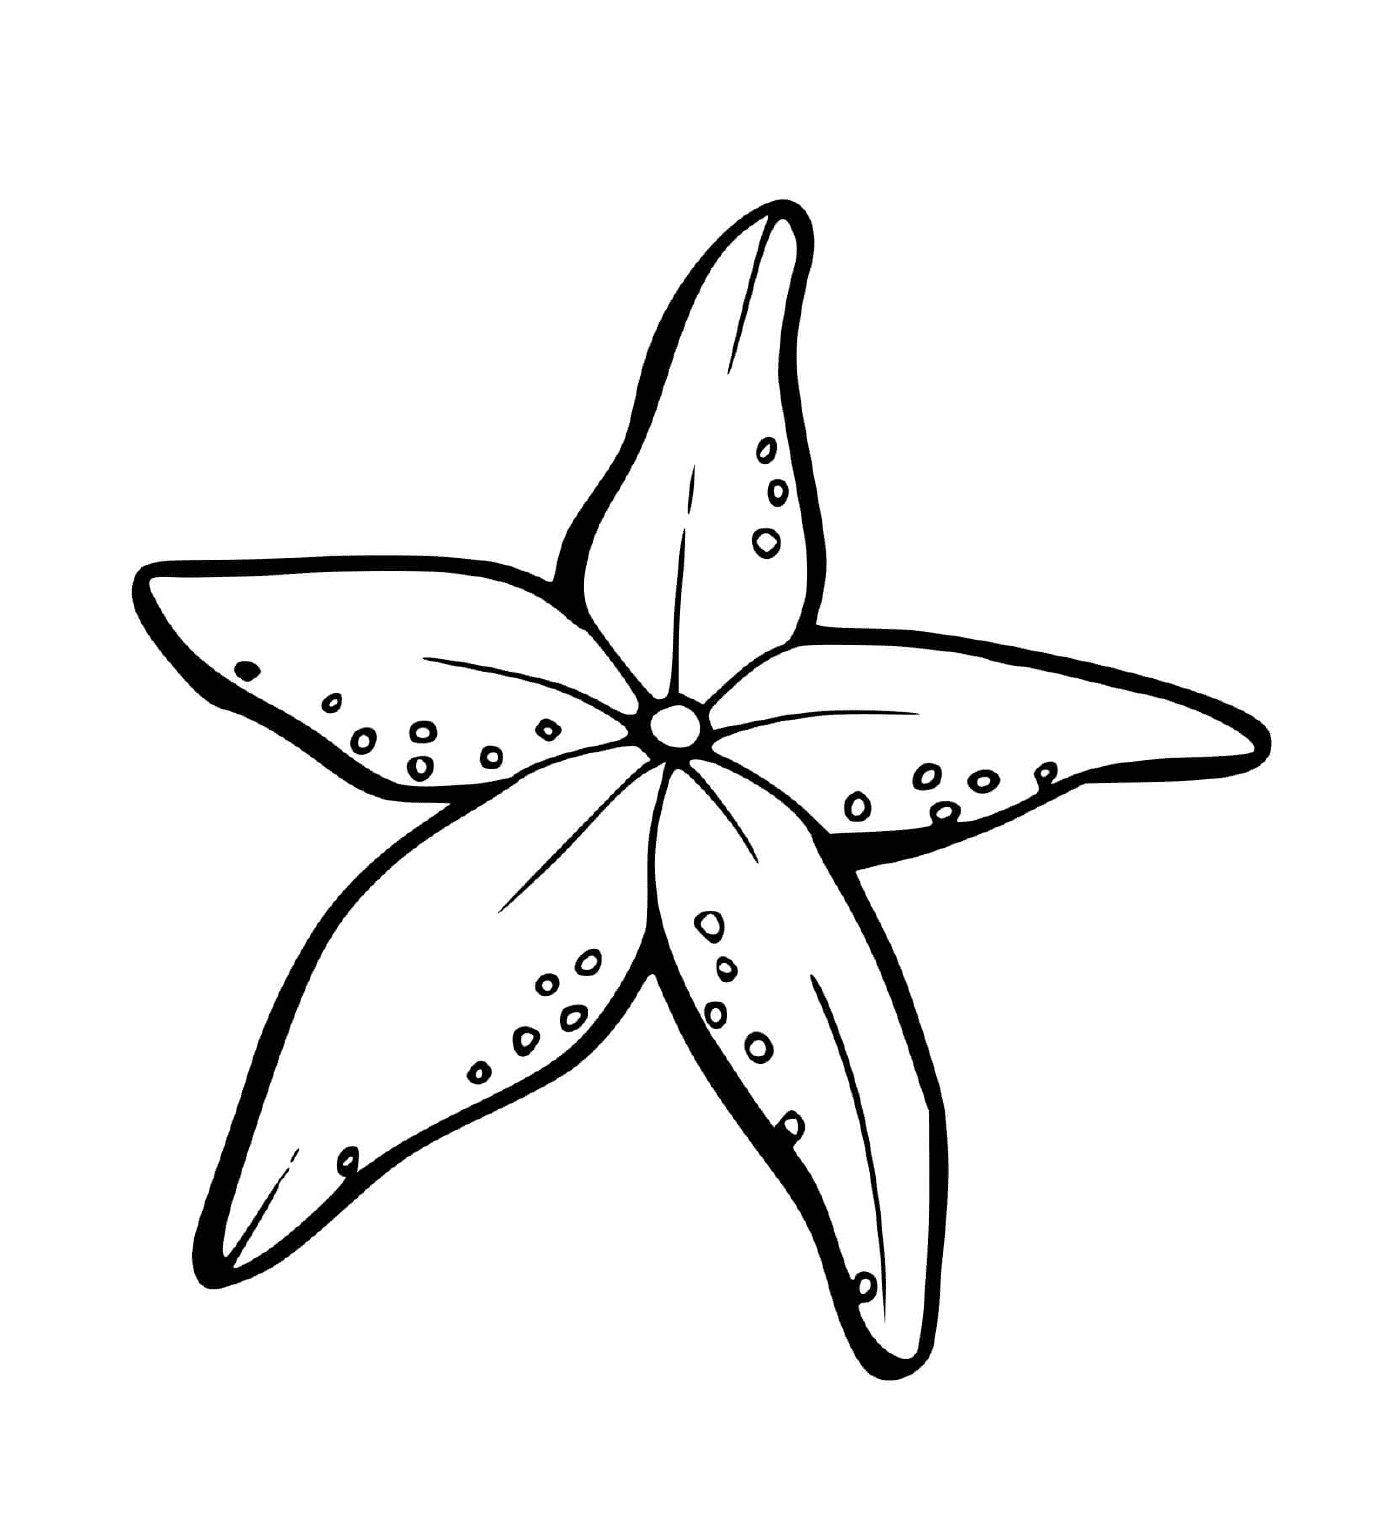  Una stella del mare a forma di fiori 